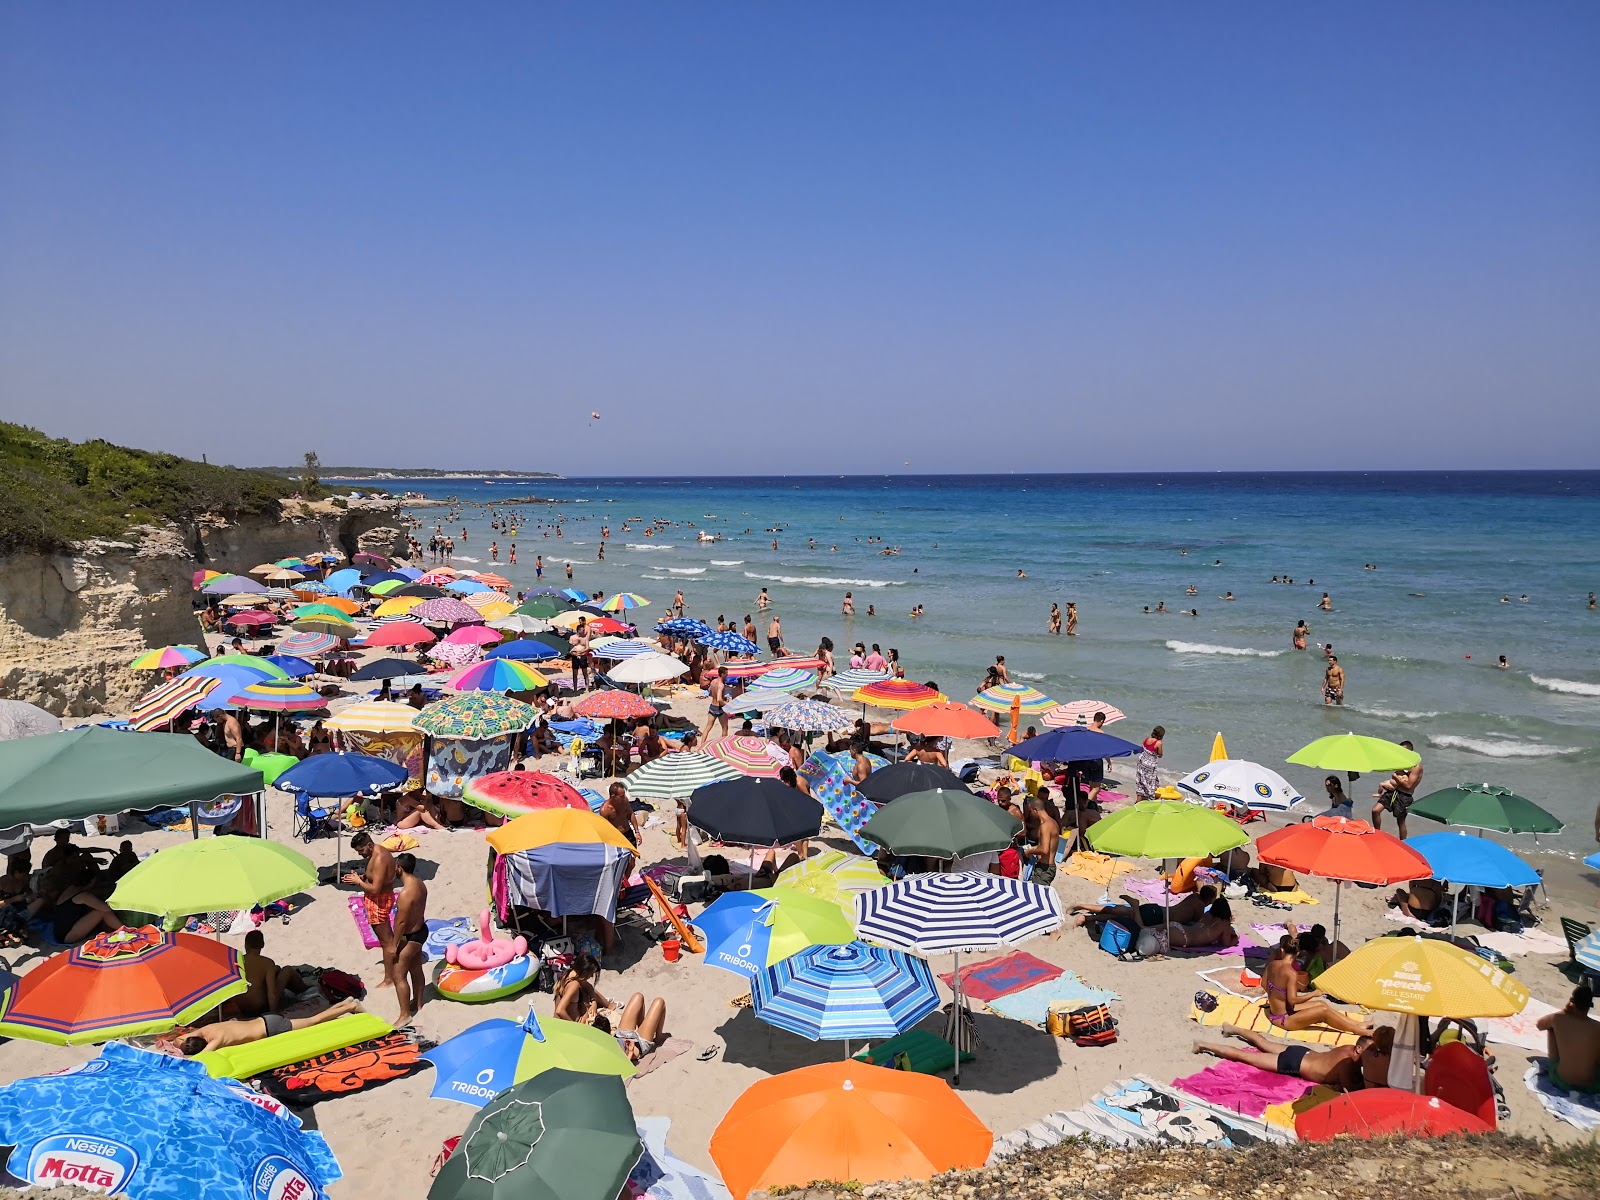 Fotografija Spiaggia Baia dei Turchi nahaja se v naravnem okolju